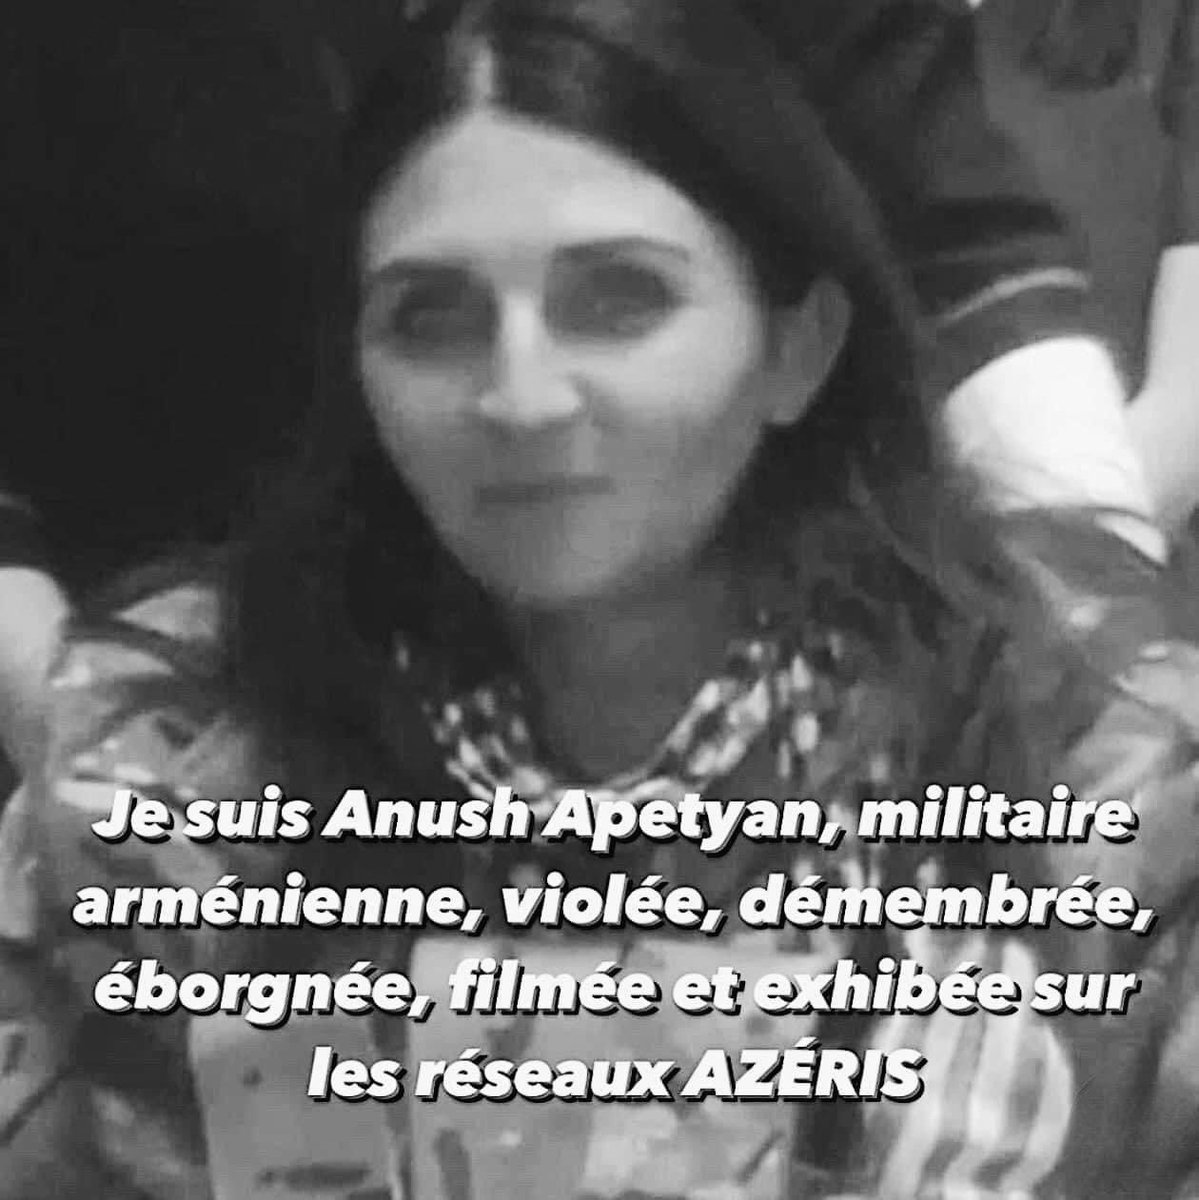 L’épuration ethnique des #arméniens continue dans le silence total, hier l'#Artsakh, demain l'🇦🇲.
#AnushApetyan est l'une des victimes de cet Etat #génocidaire de l'Azerbaïdjan.
L’accord #gazier entre l’#Europe et l’Azerbaïdjan se traduit aujourd'hui par la mort de l’#Arménie.